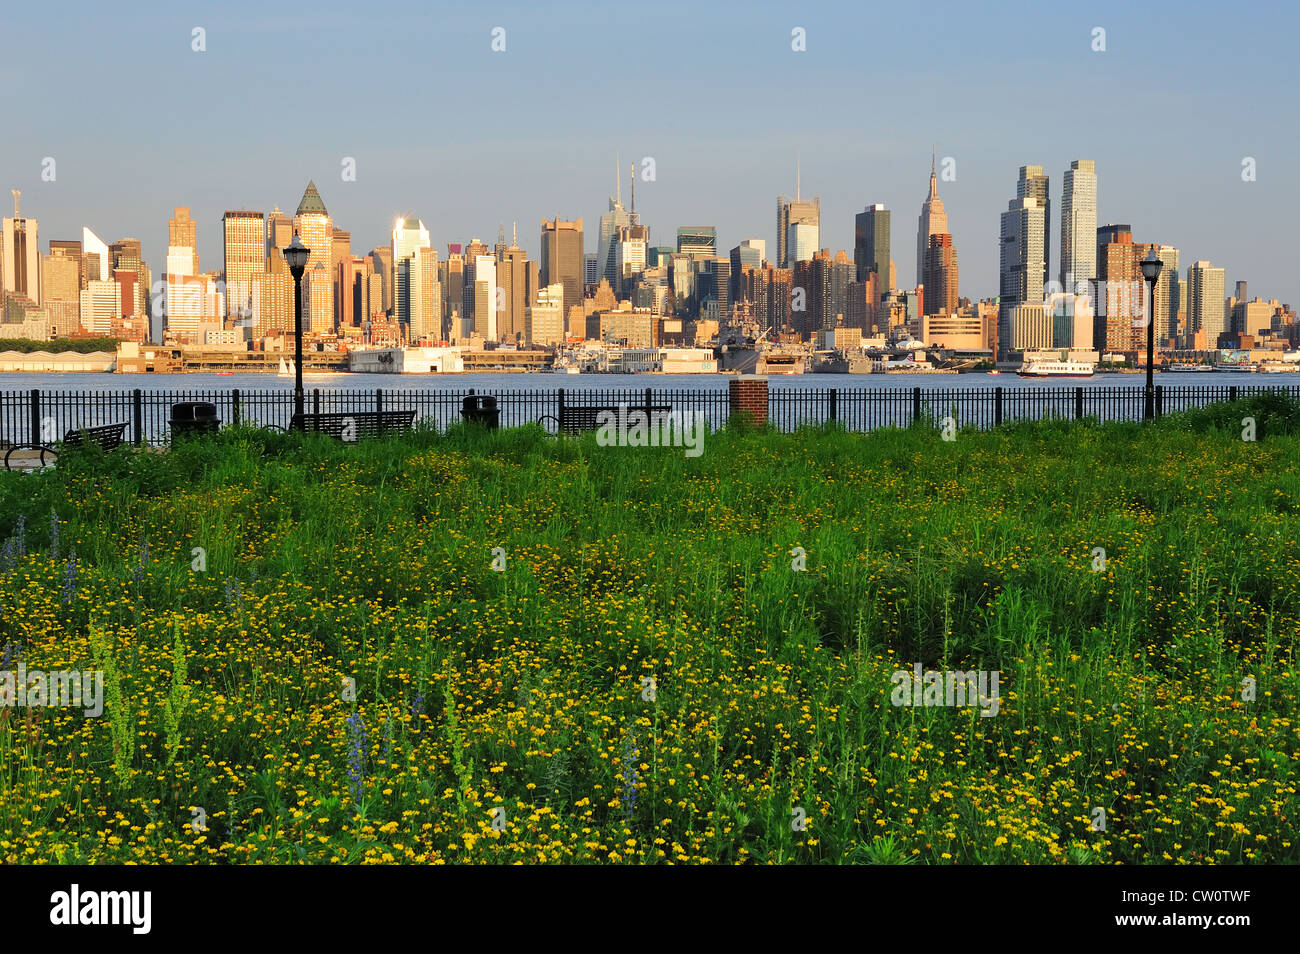 New York City Manhattan Midtown Skyline-Blick vom New Jersey Hudson River Waterfront Park mit grünen Rasen bei Sonnenuntergang. Stockfoto